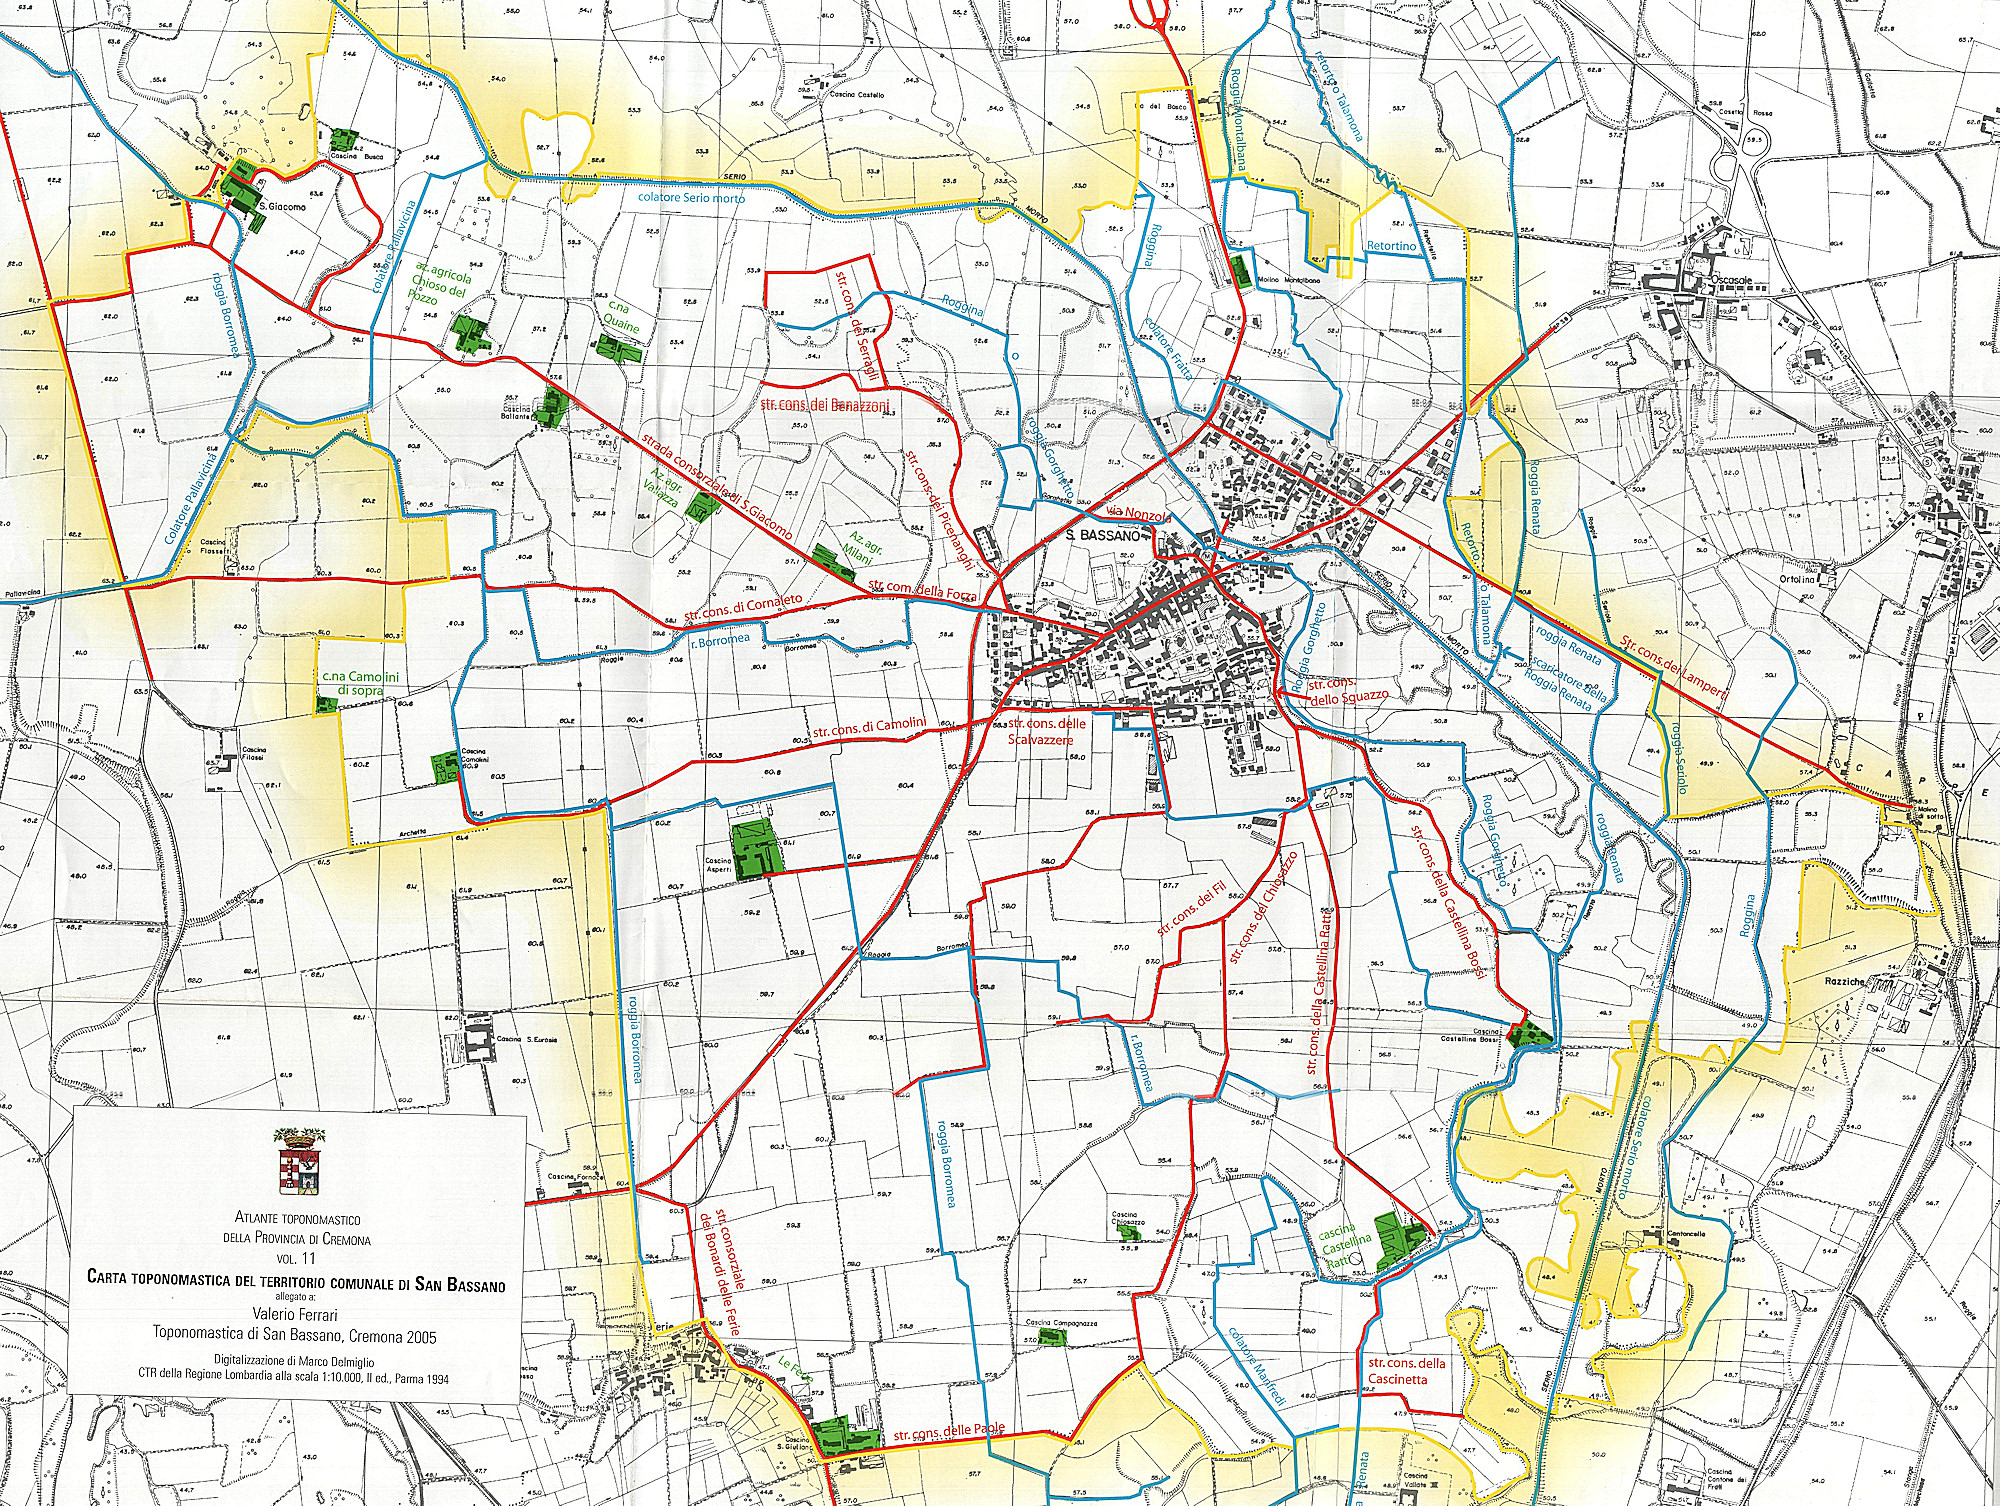 Mappa topografica delle strade vicinali di San Bassano